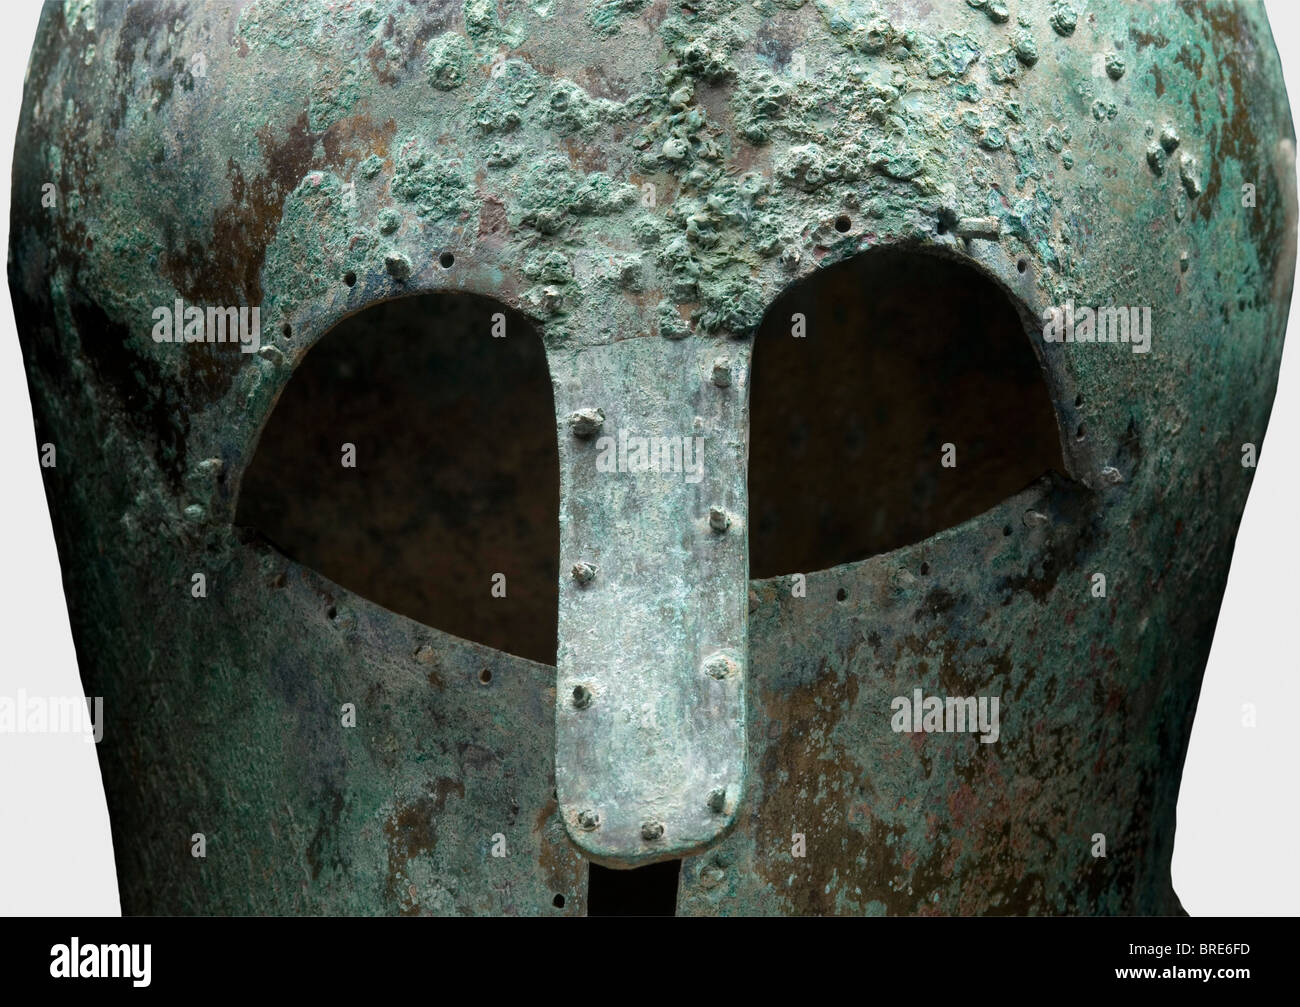 Ein korinthischer Helm, 7./6. Jahrhundert v. Chr. Dickwandiger, schwerer korinthischer Bronze-Helm mit hohem Schädel und verlängertem Nackenschutz. Große Augenausschnitte, leicht konkave Wangenstücke und ein robuster, genieteter langer Nasenschutz, der nach außen gebogen ist. Umgeben von gebohrten Löchern, einige paarweise, und einige halten noch die dekorativen oder auskleidung Nieten mit runden Köpfen. Höhe 22,1 cm. Gewicht 1288 g Metalloberflächen mit hellbrauner, dunkler und hellgrüner Patina. Schmutzrückstände im Inneren. Isolierte Korrosionsgruben an der Oberfläche. Sehr gute Metallrückhaltung. Sammlung Axel Guttmann (H 147/ A, Stockfoto